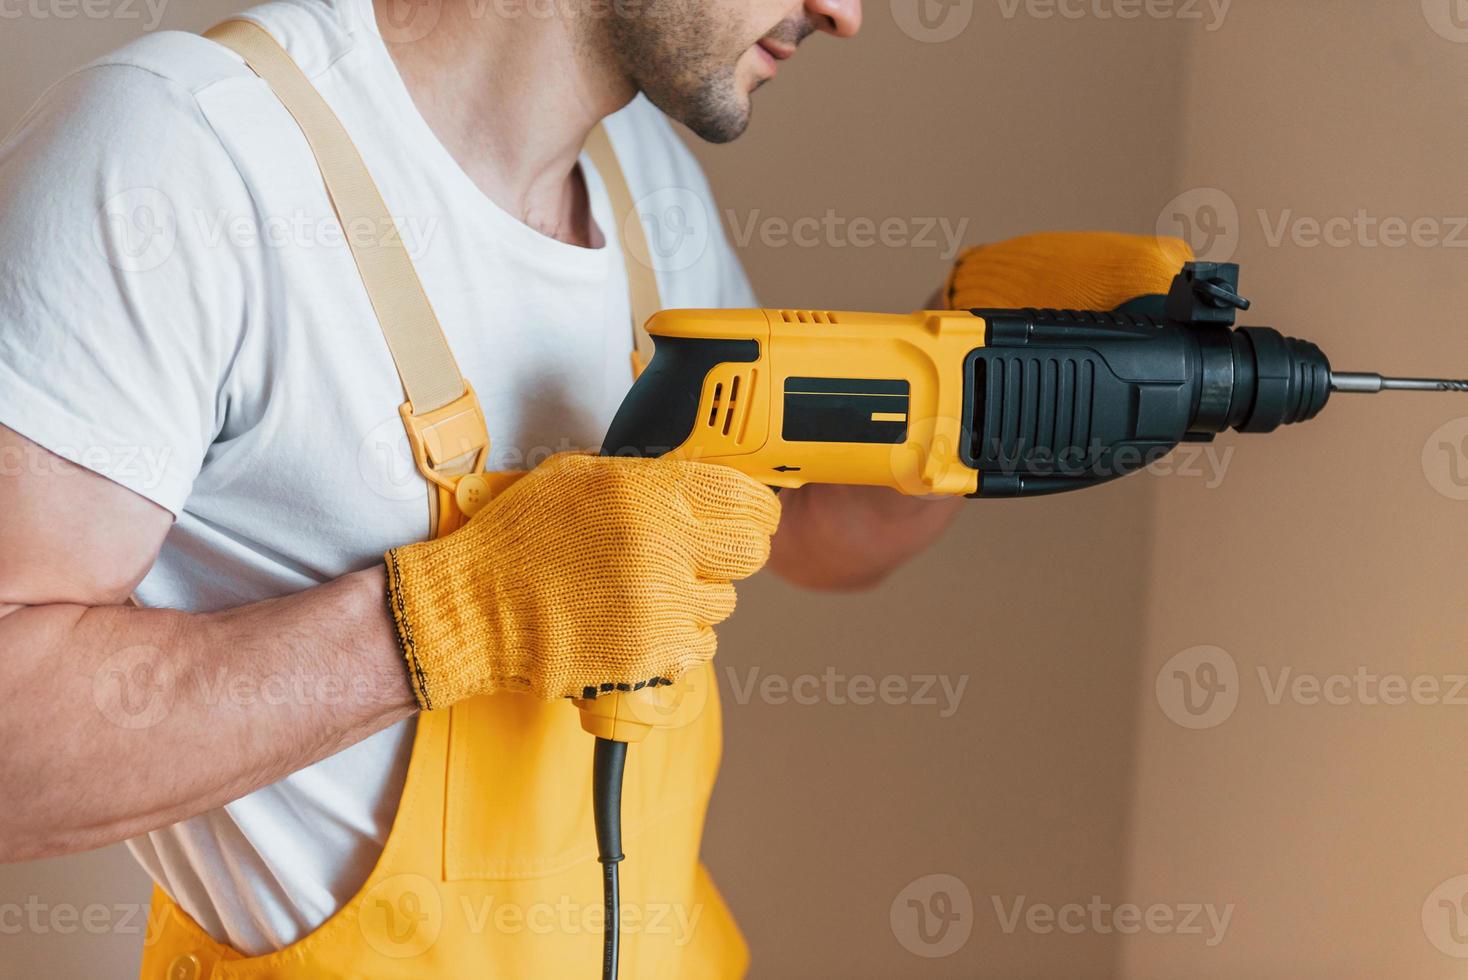 klusjesman in geel uniform werken binnenshuis door gebruik makend van hamer oefening. huis vernieuwing opvatting foto